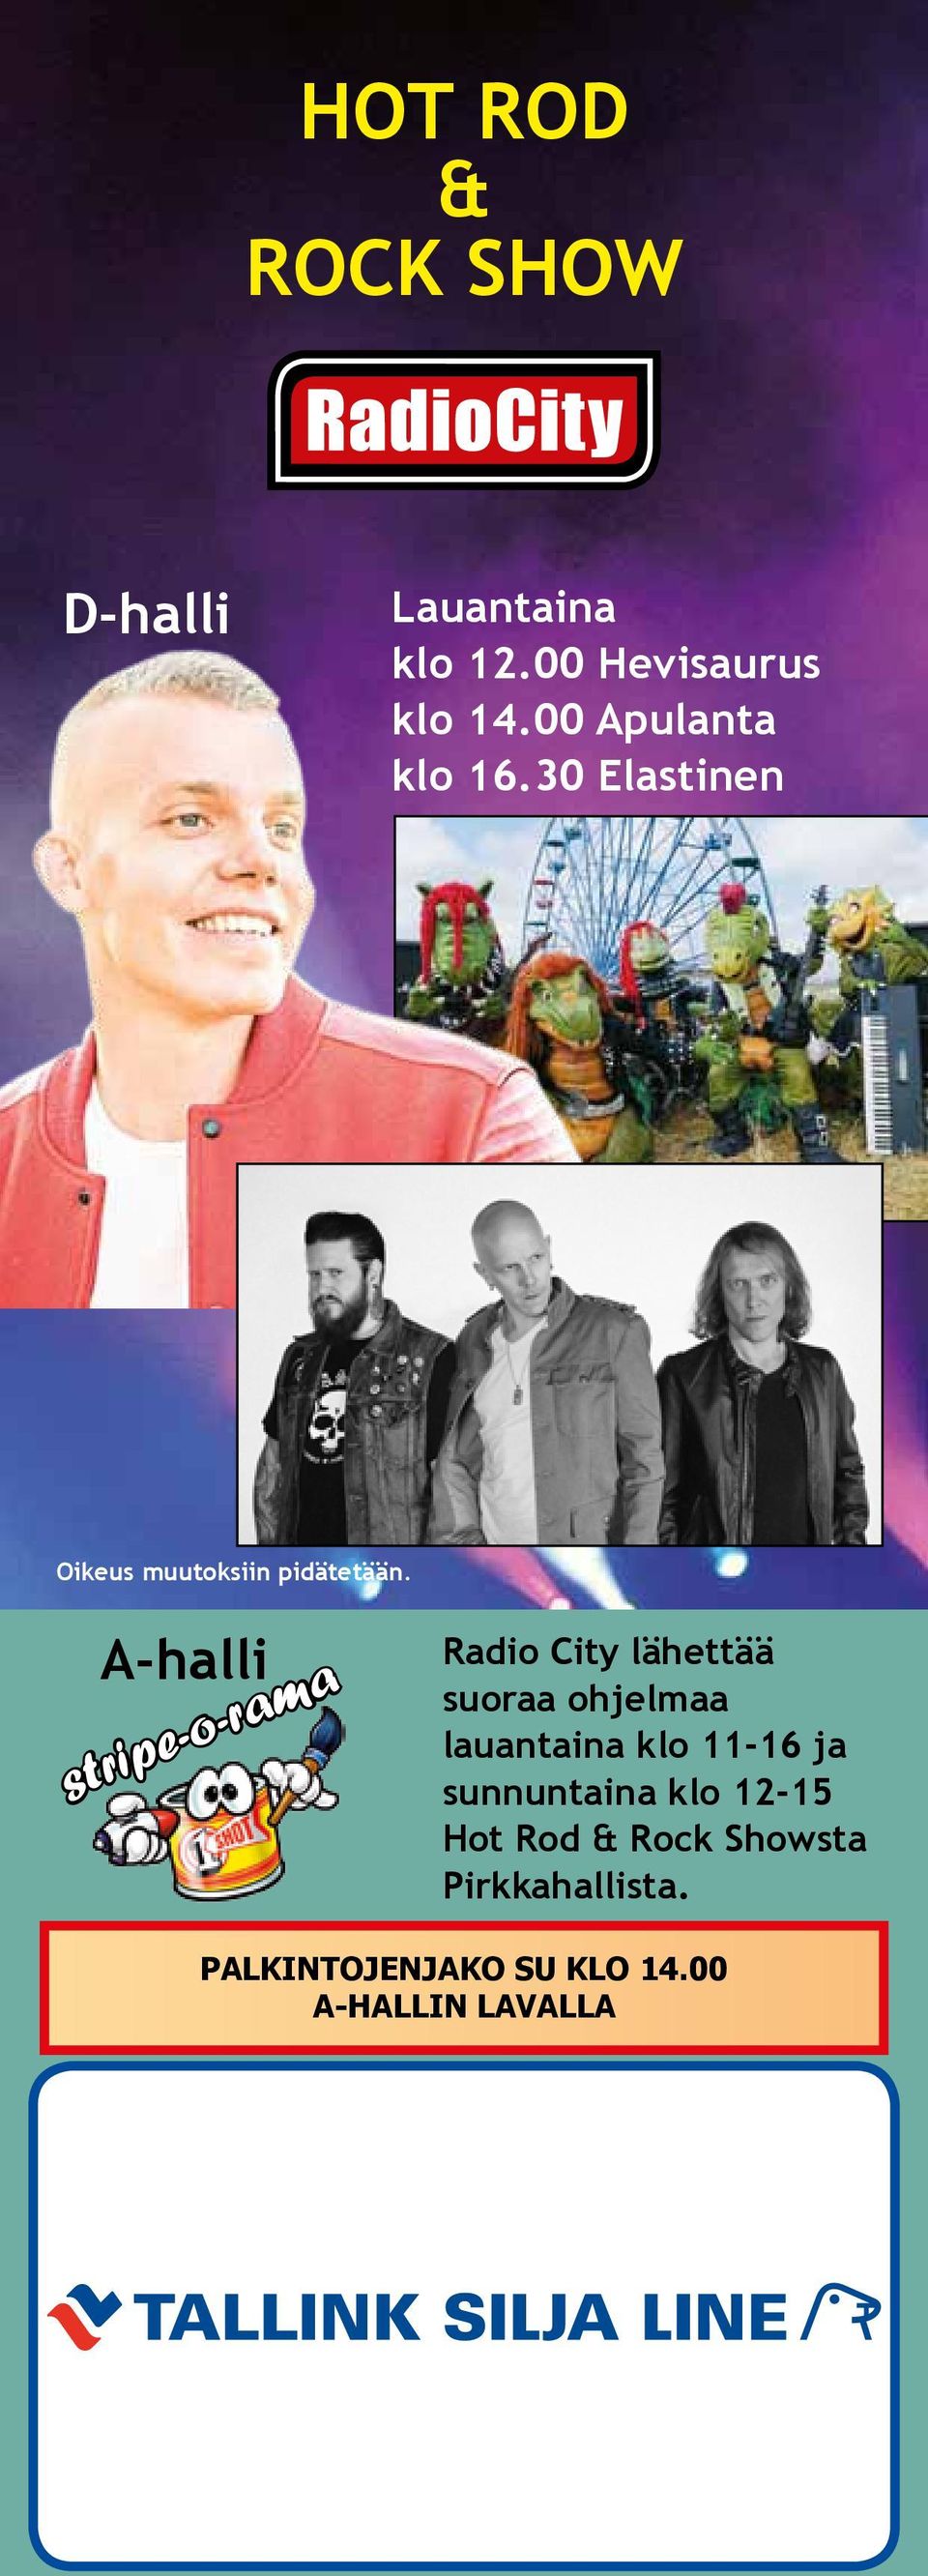 A-halli stripe-o-rama Radio City lähettää suoraa ohjelmaa lauantaina klo 11-16